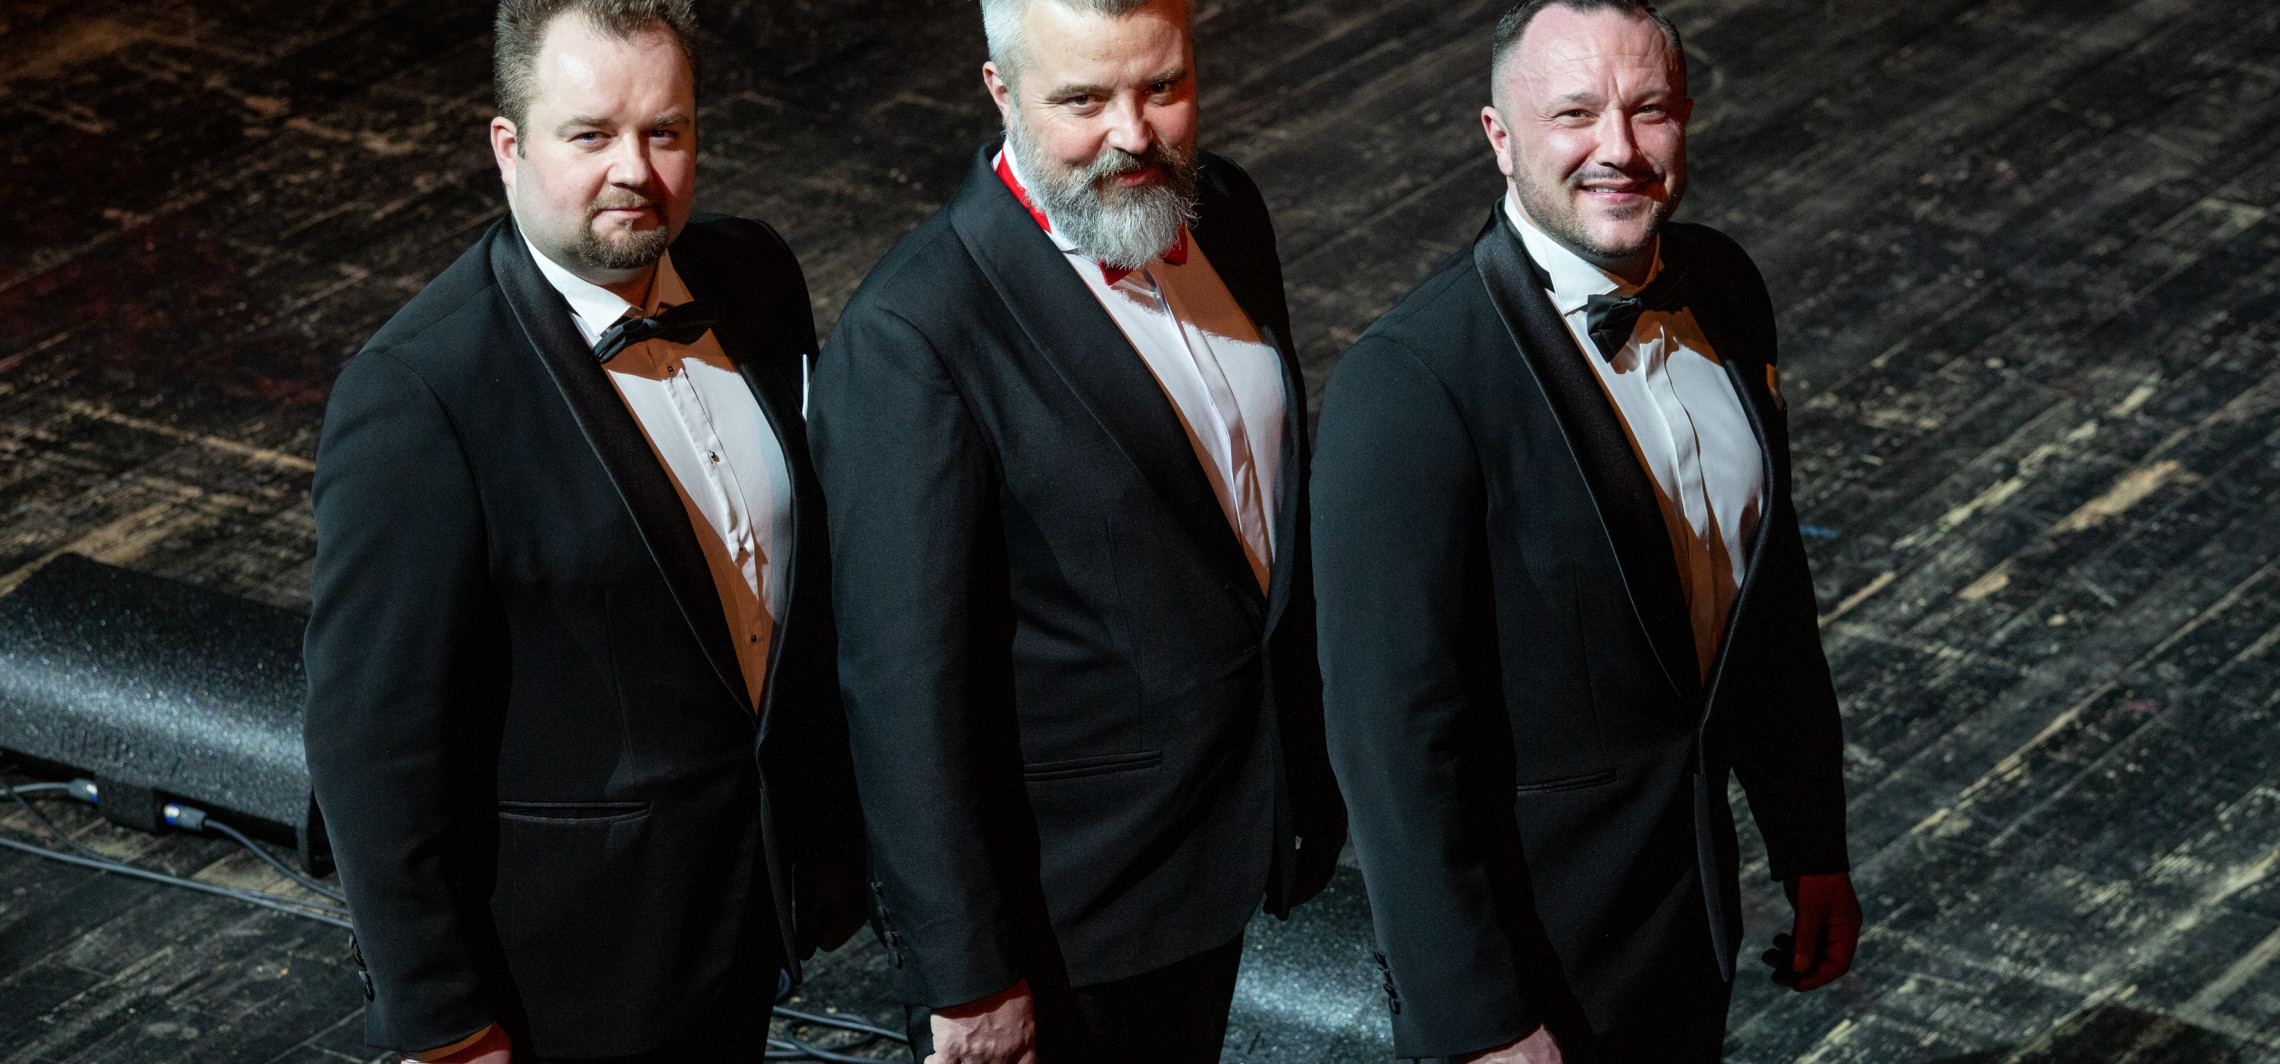 Mogilno - To będzie świąteczny koncert trzech tenorów